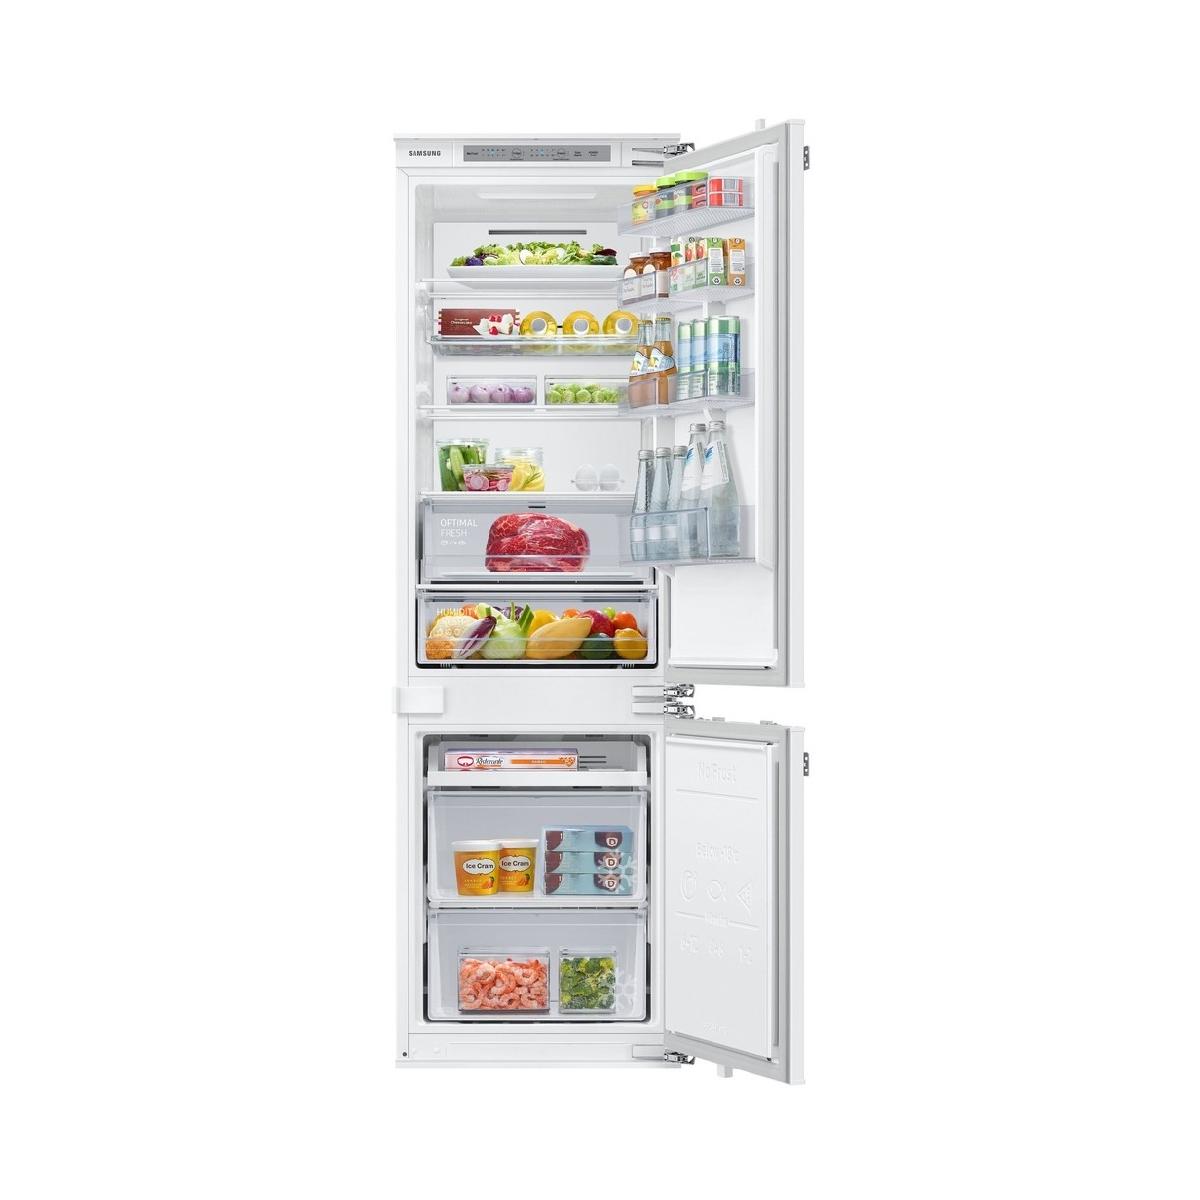 Почему нагреваются боковые стенки холодильника?